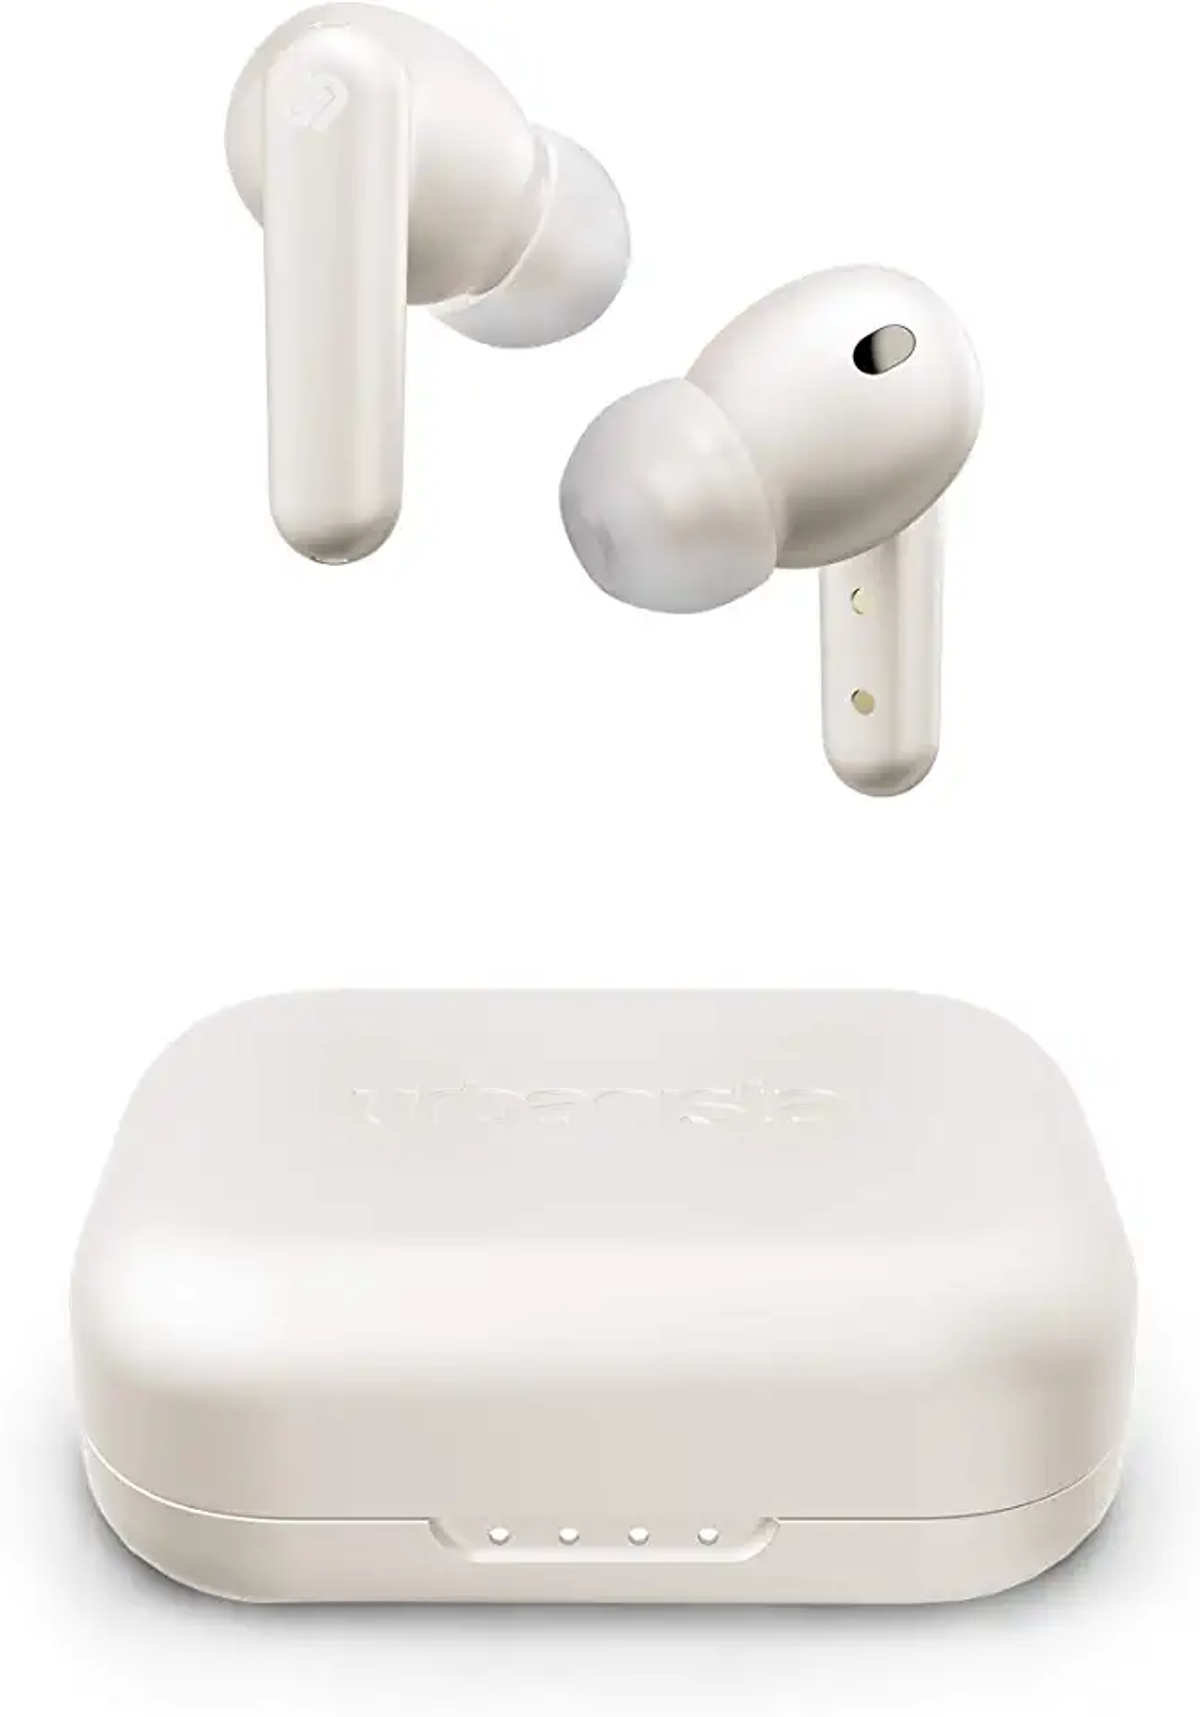 URBANISTA London, In-ear In-Ear Headphones White Bluetooth Wireless - Pearl